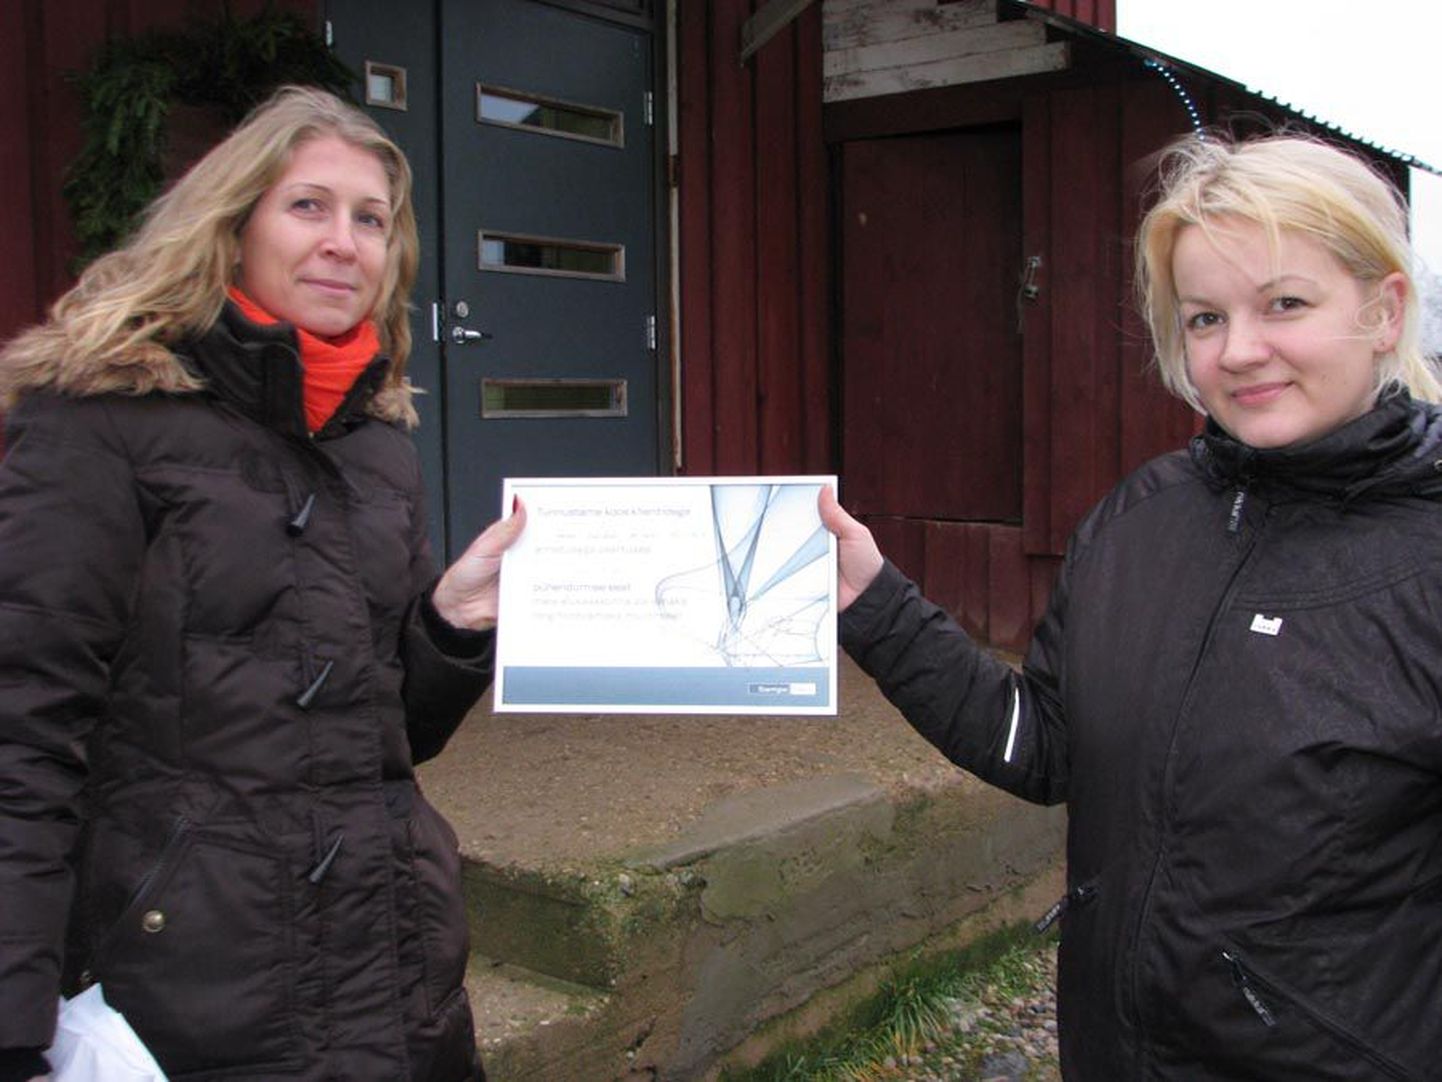 Sampo panga kliendid toetasid Viljandi kodutute loomade varjupaika 1530 euroga, millele pank lisas sama palju, seega kogunes 3060 eurot.